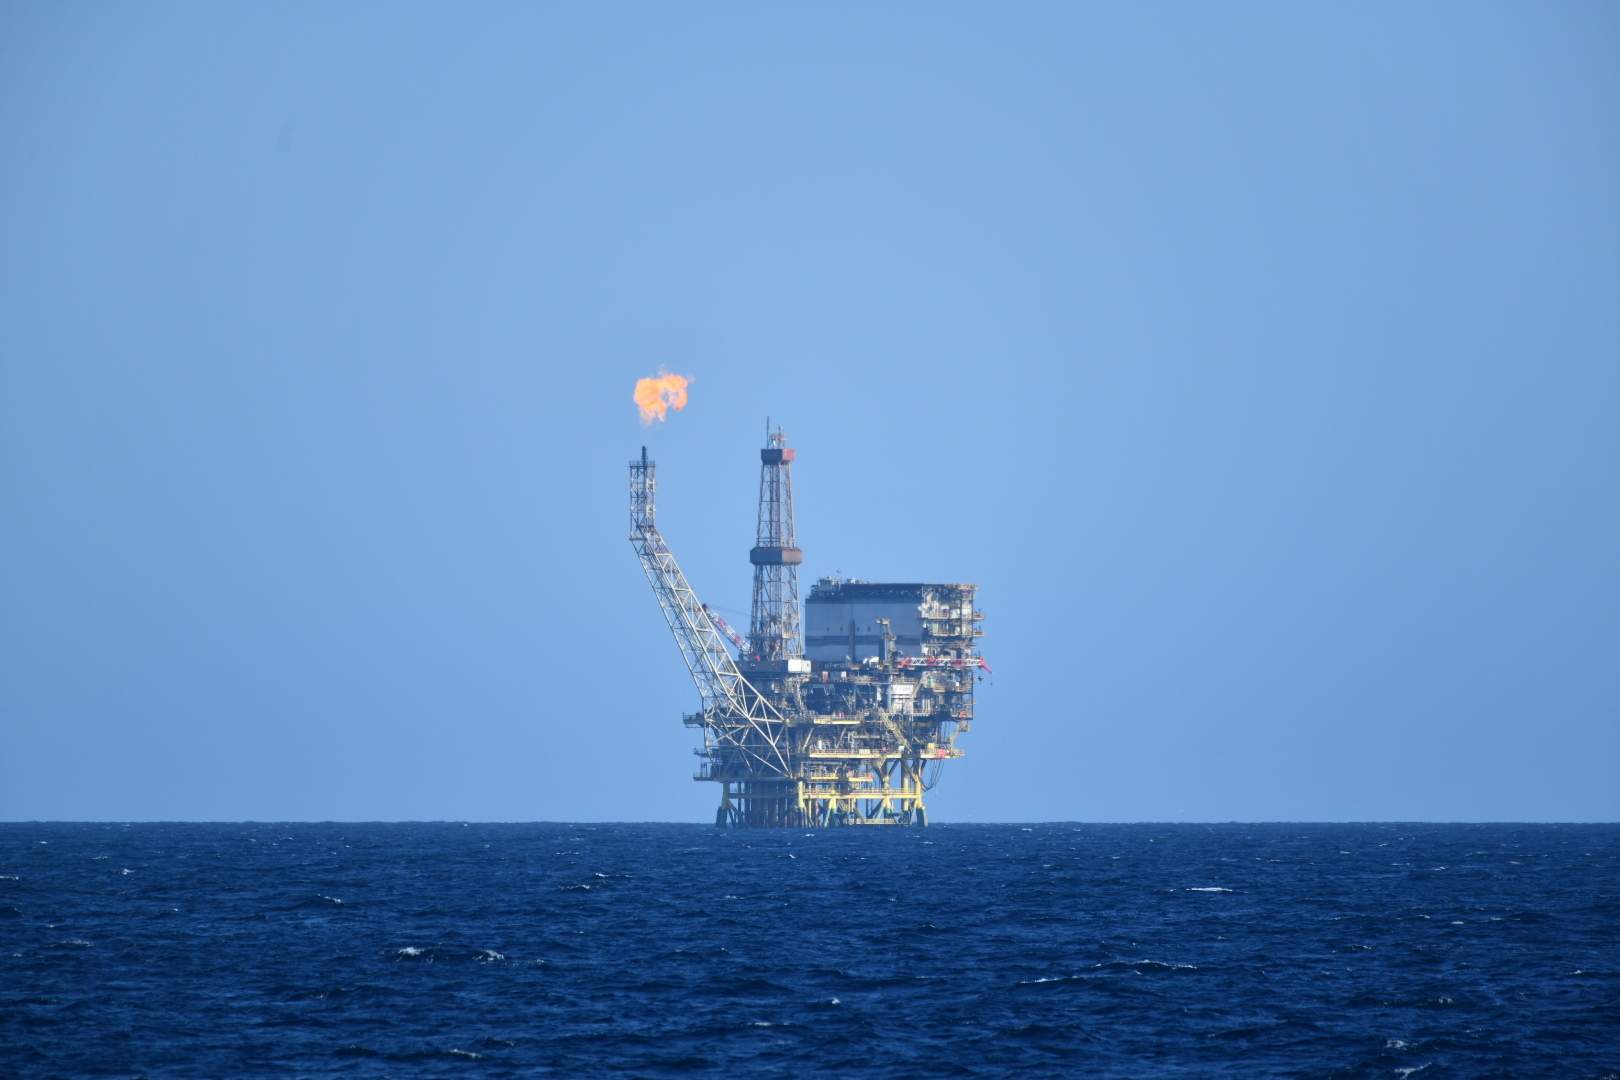 Els oleoductes abandonats són una nova amenaça al mar del Nord? Mercuri, plom radioactiu i poloni-210